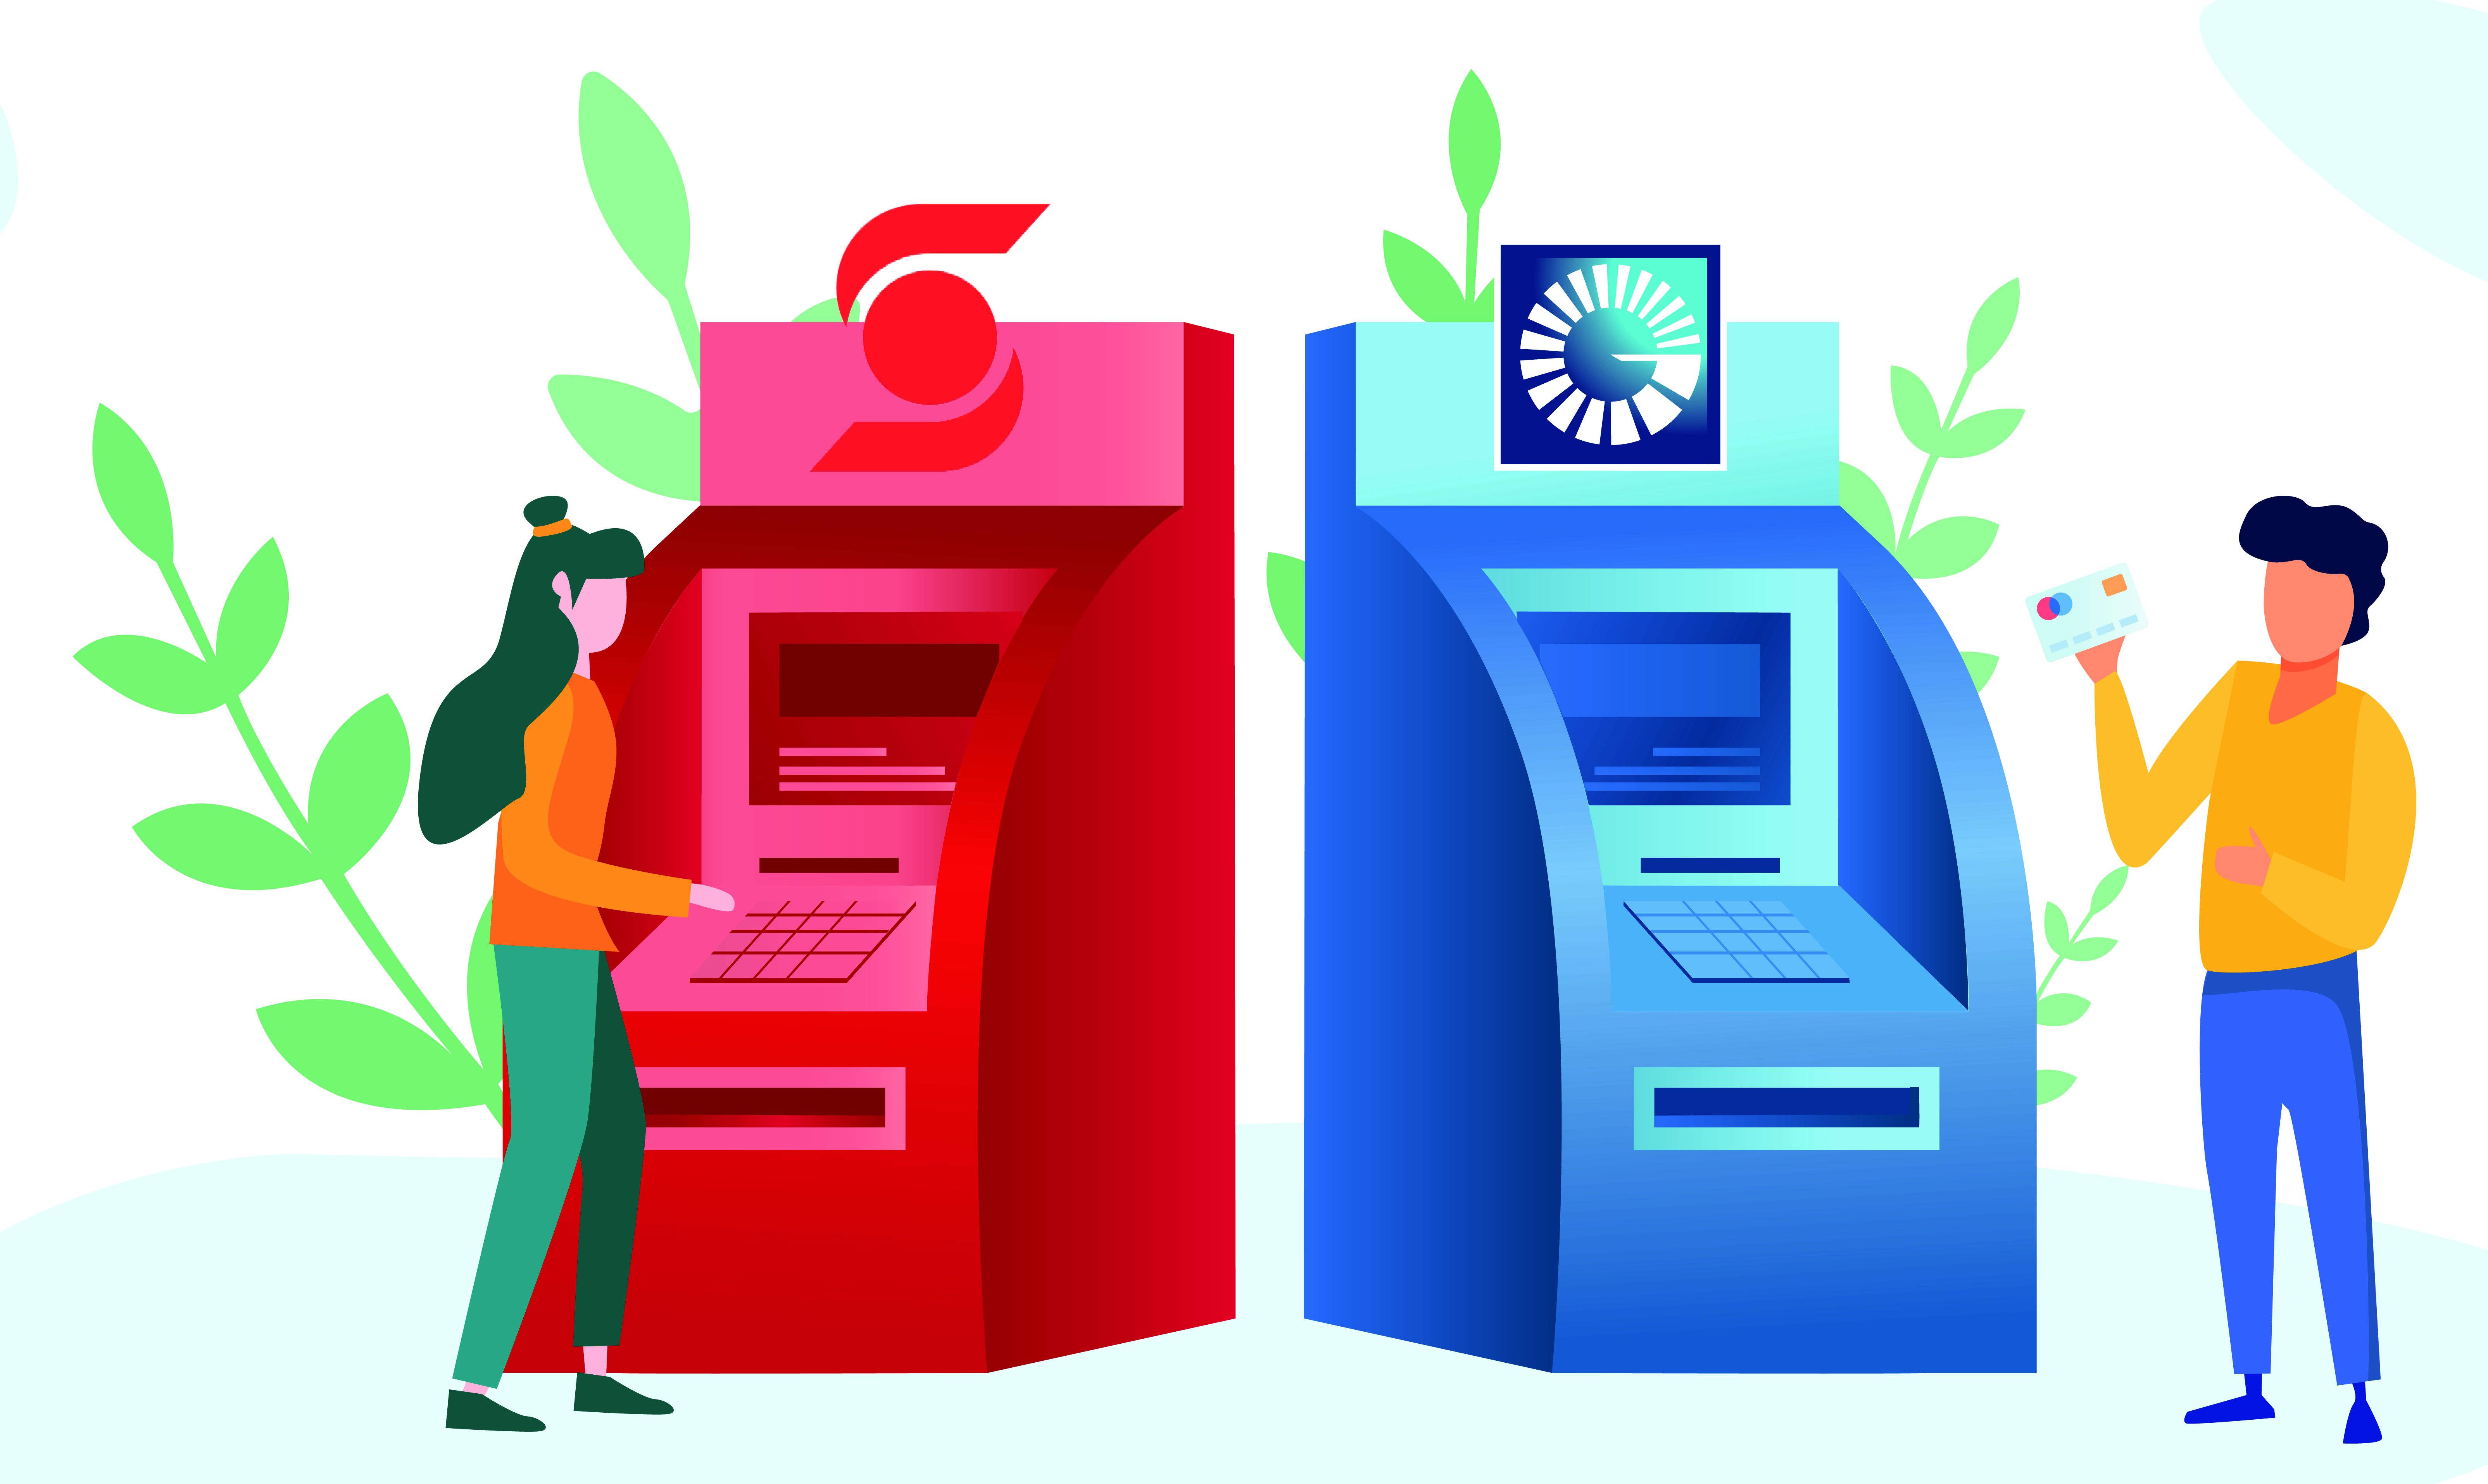 Popular y Scotiabank suman sus redes de cajeros automáticos para consulta y retiro